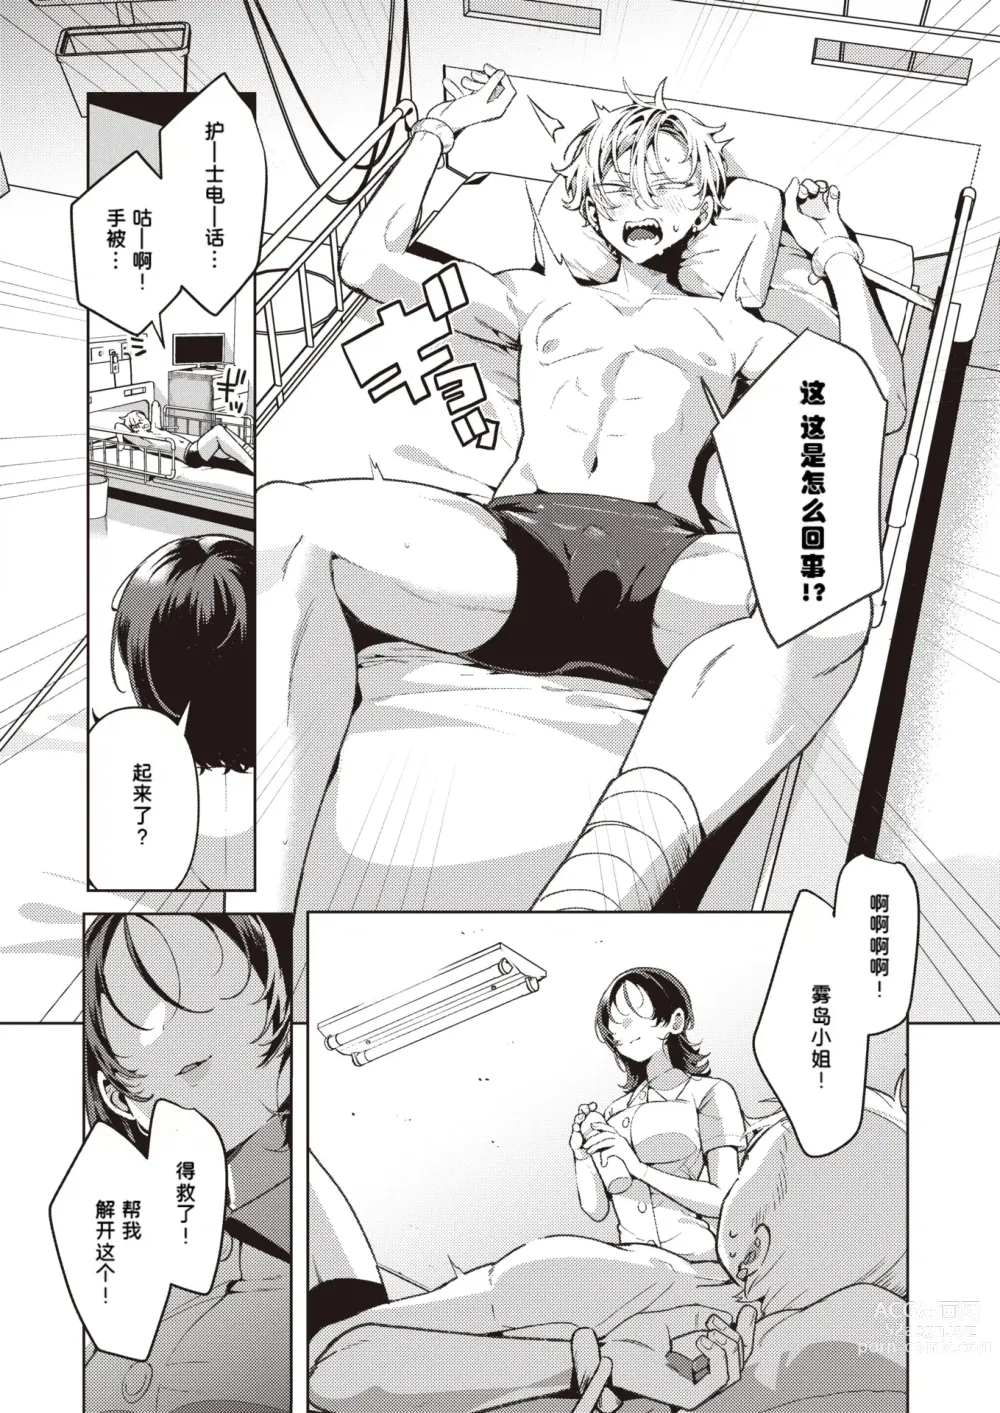 Page 7 of manga Yasashii? Nurse no Kirishima-san